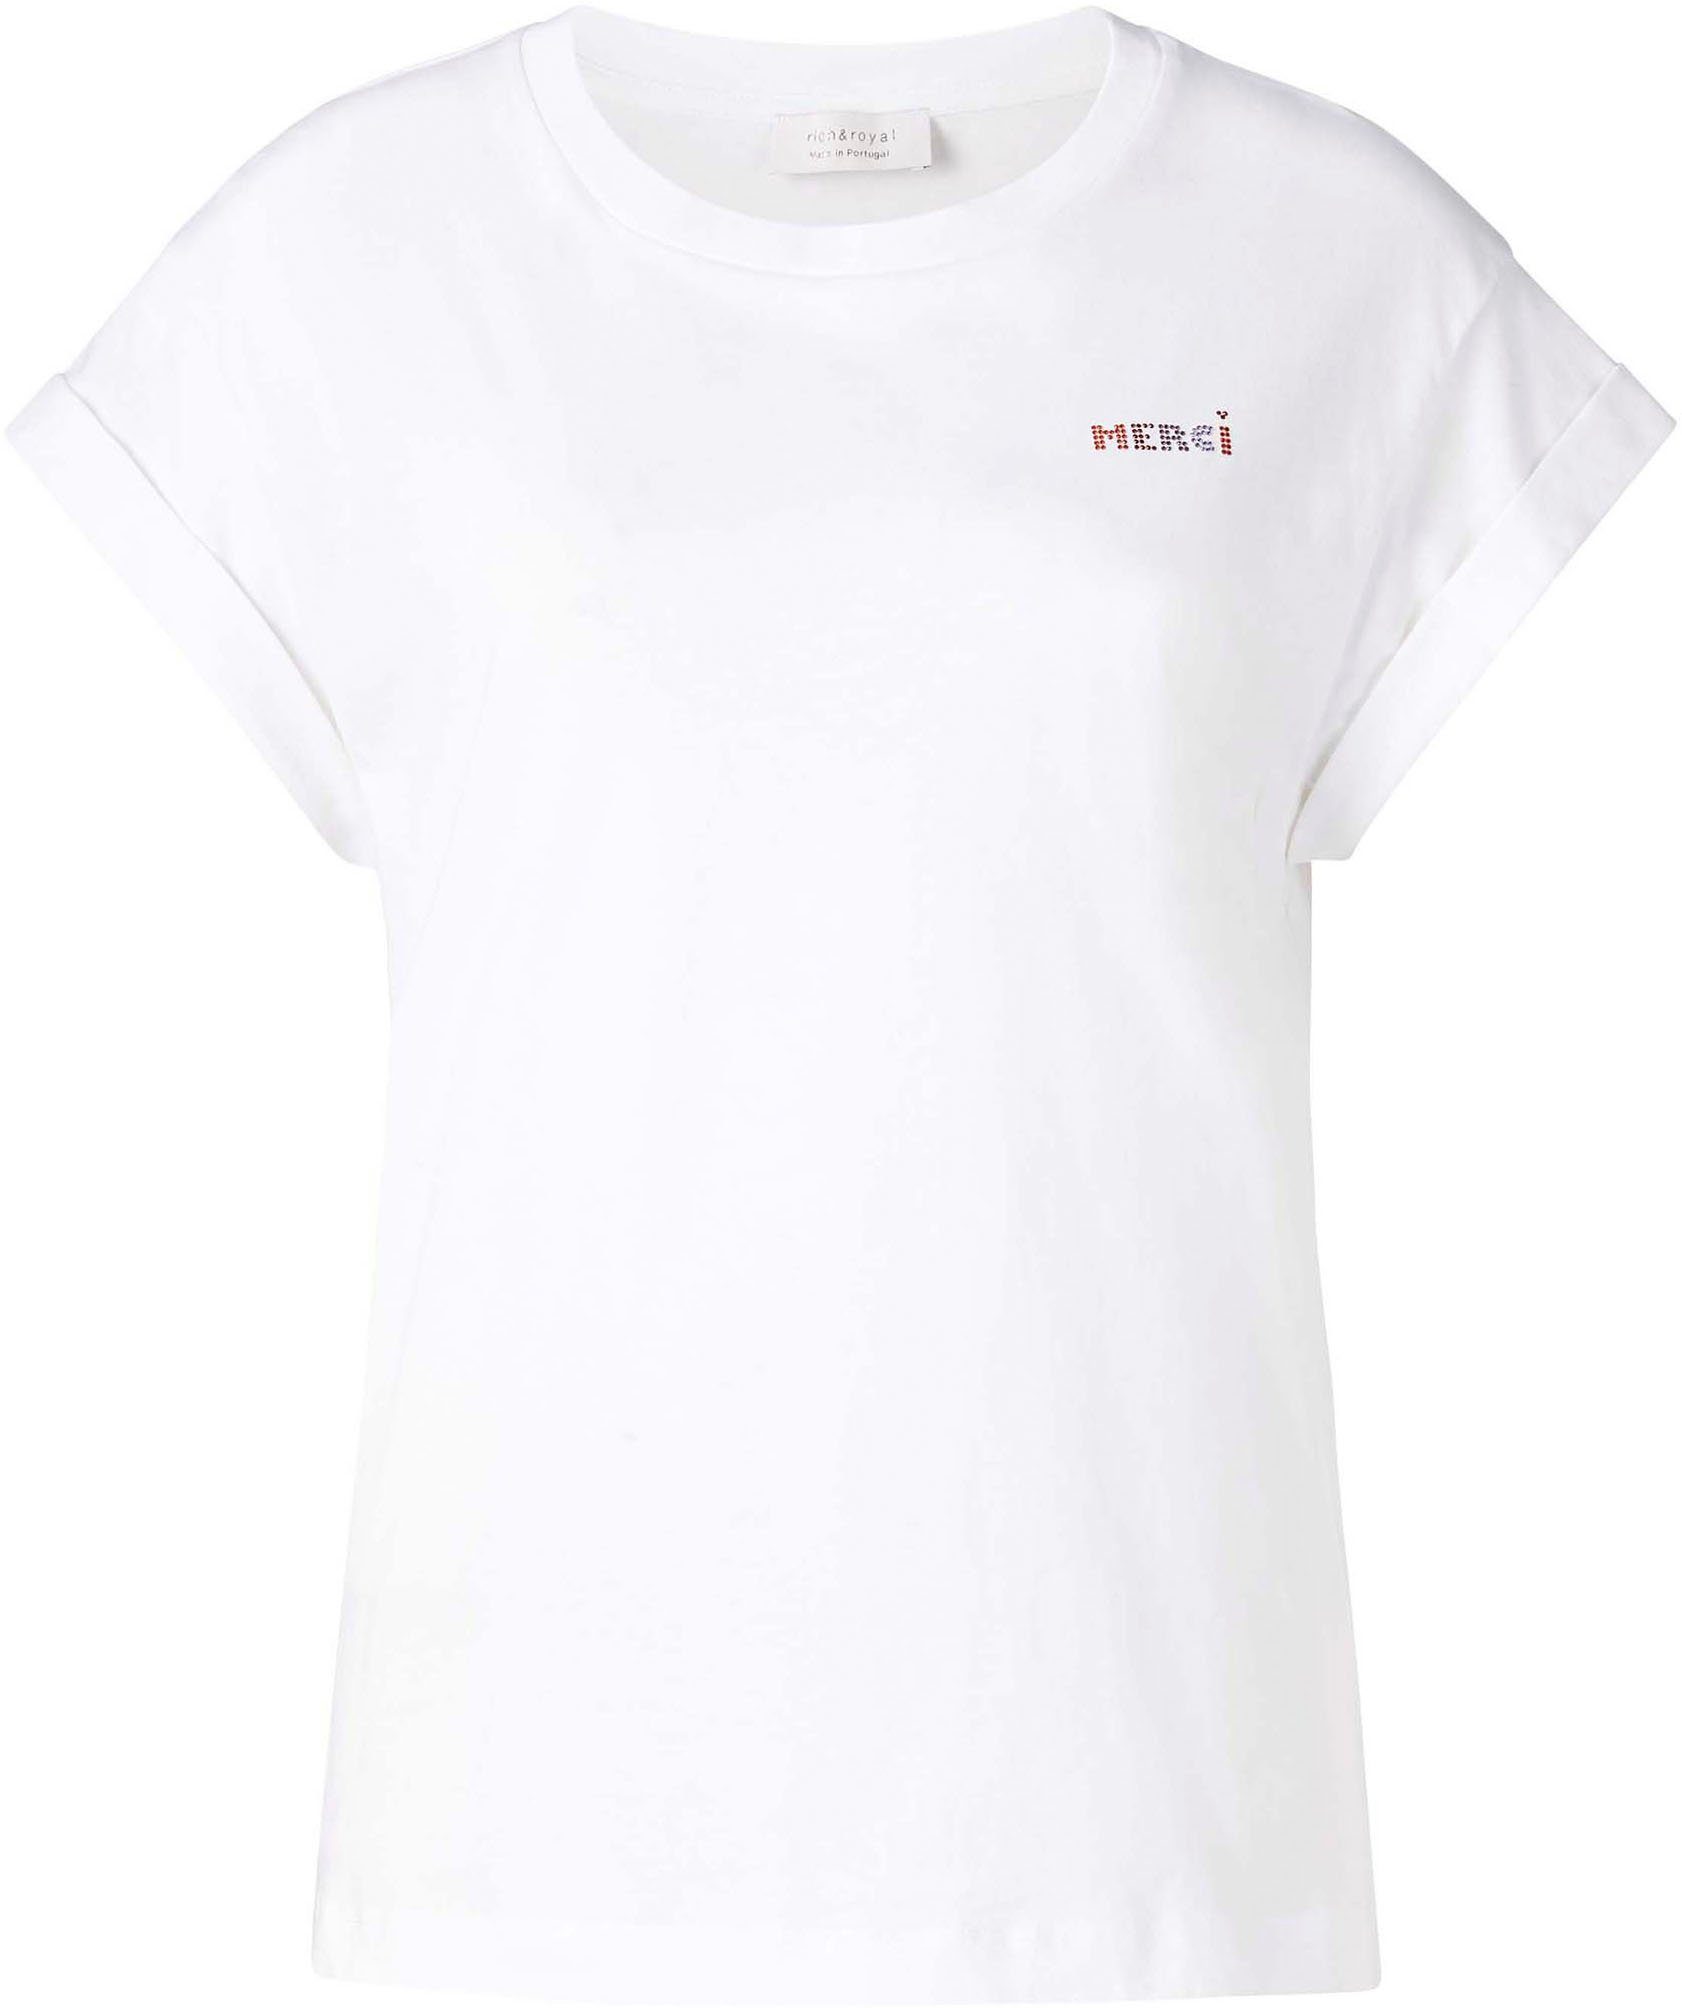 Rich & Royal T-Shirt weiß Brusthöhe original Glitzer-Print mit in